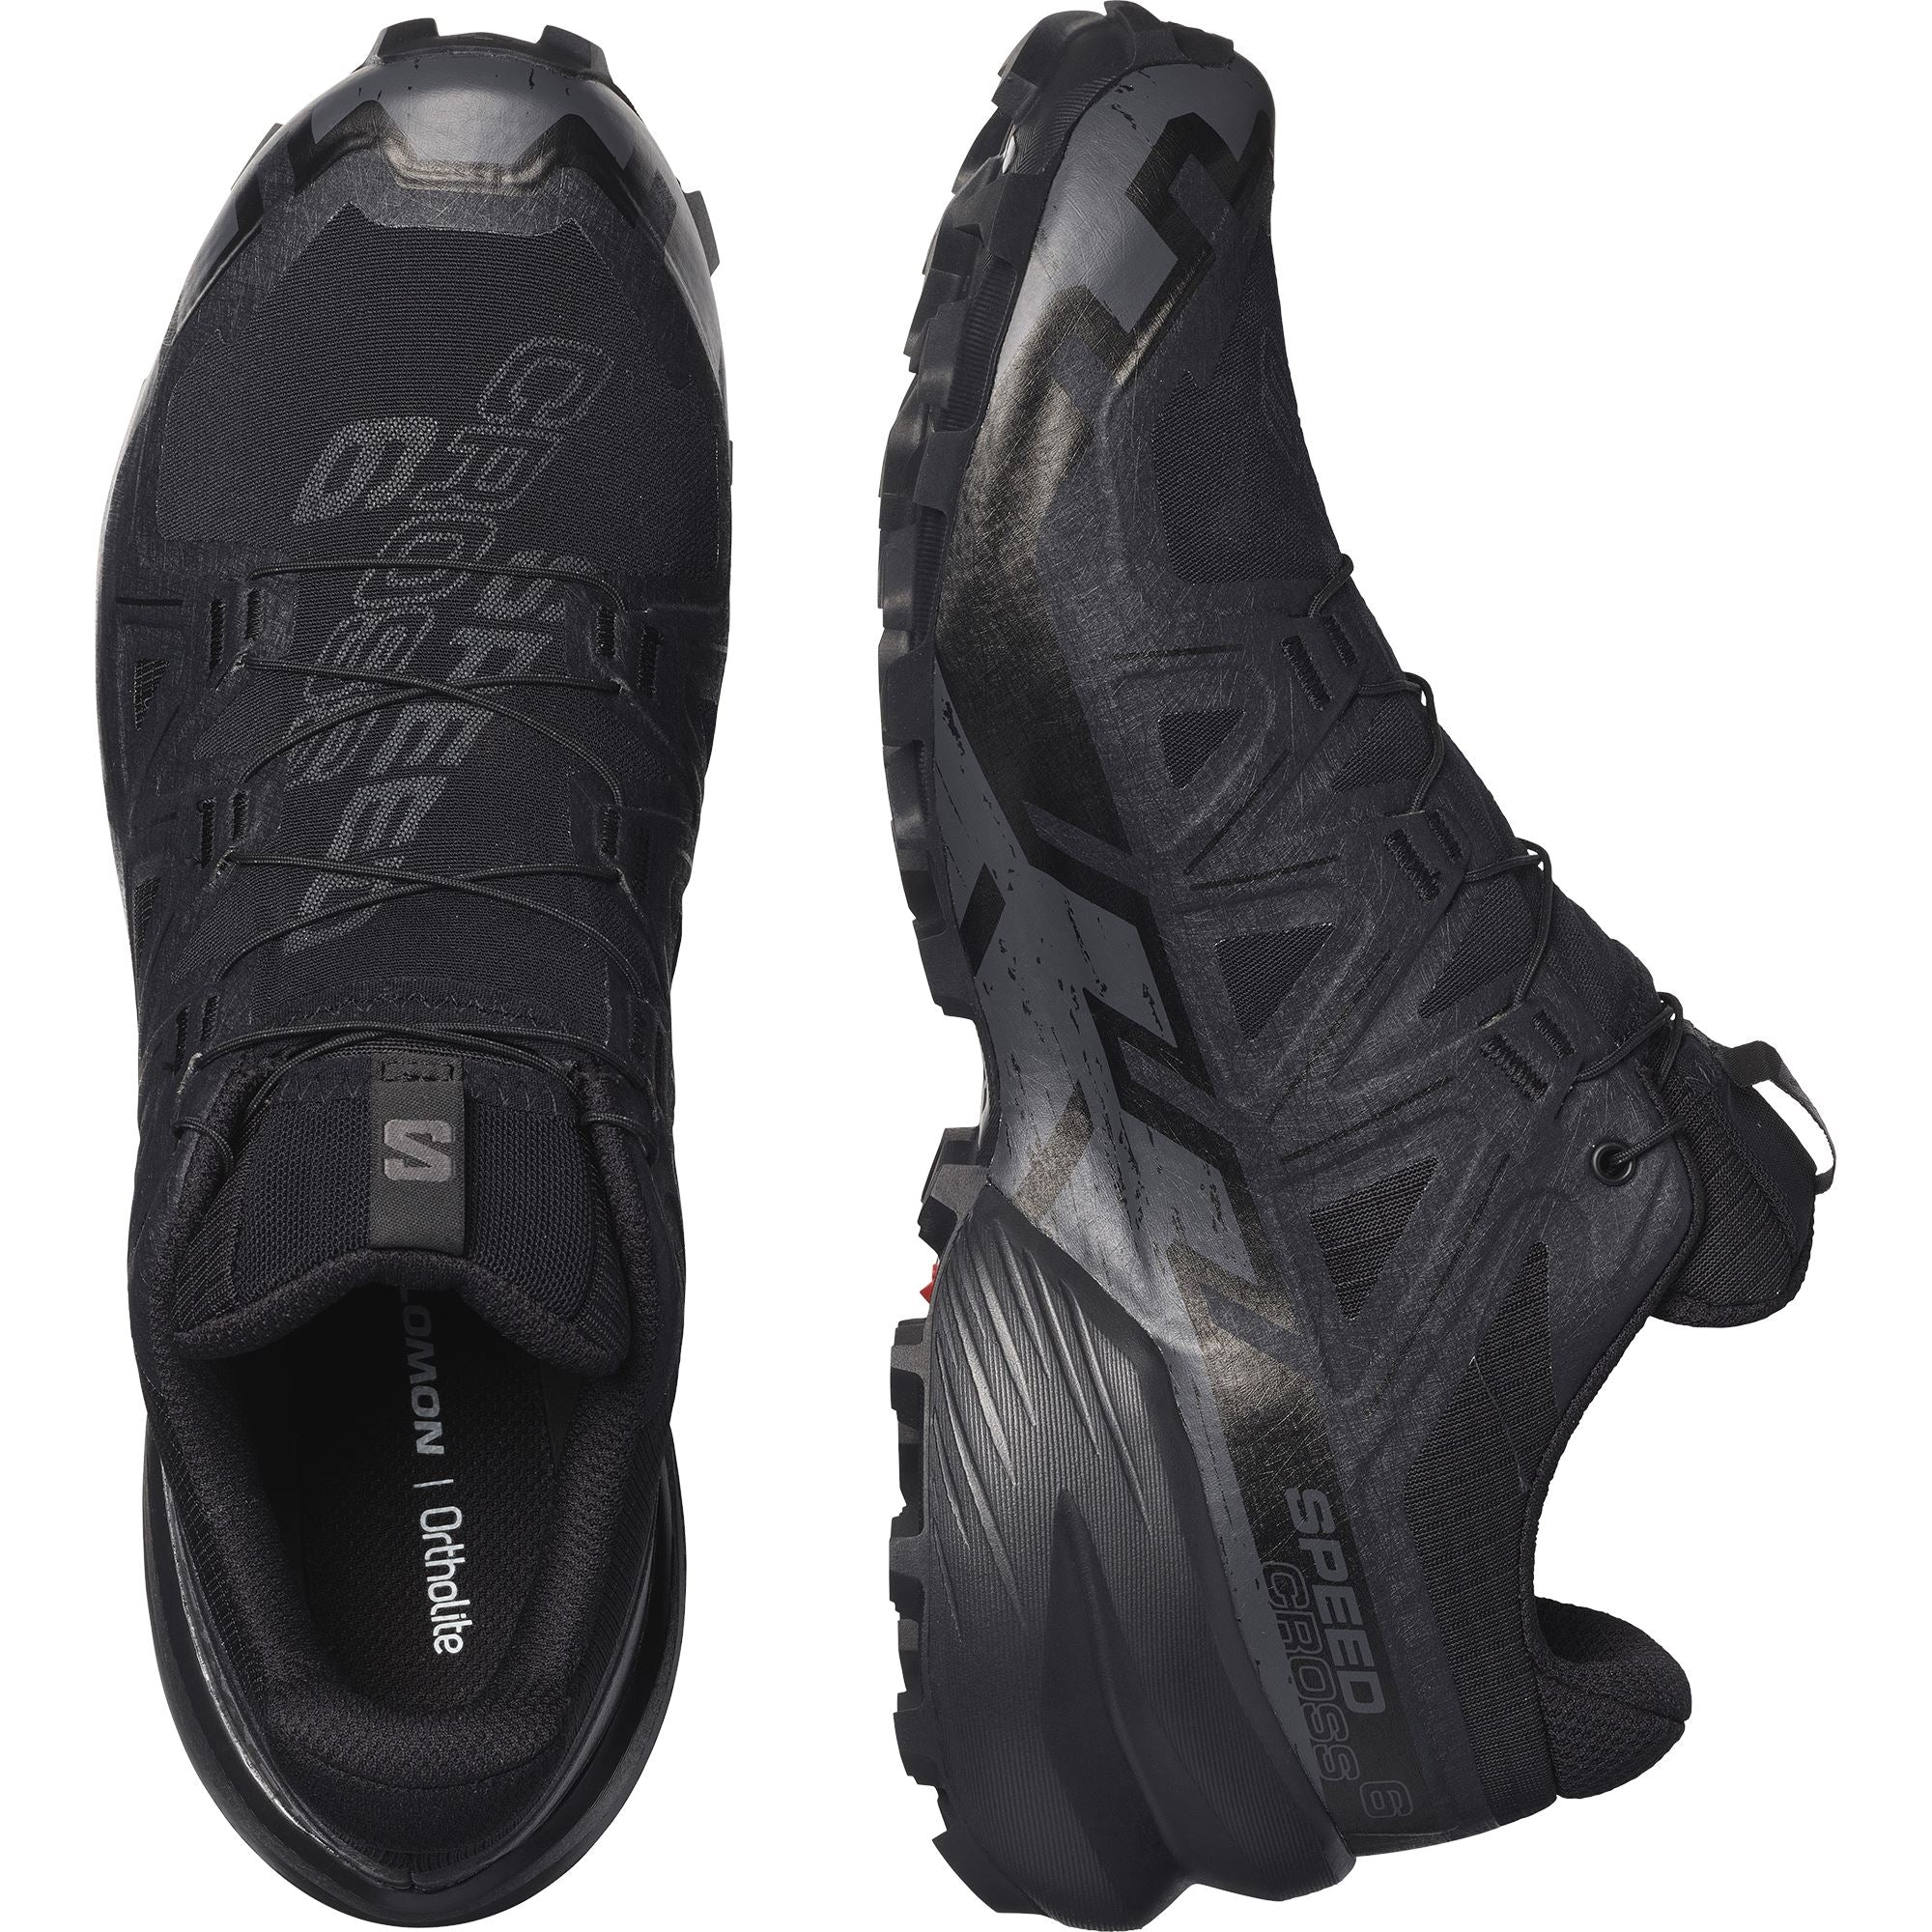 Salomon Speedcross 6 GTX Men's Trail Running Shoes Black/Black/Phantom US 9 